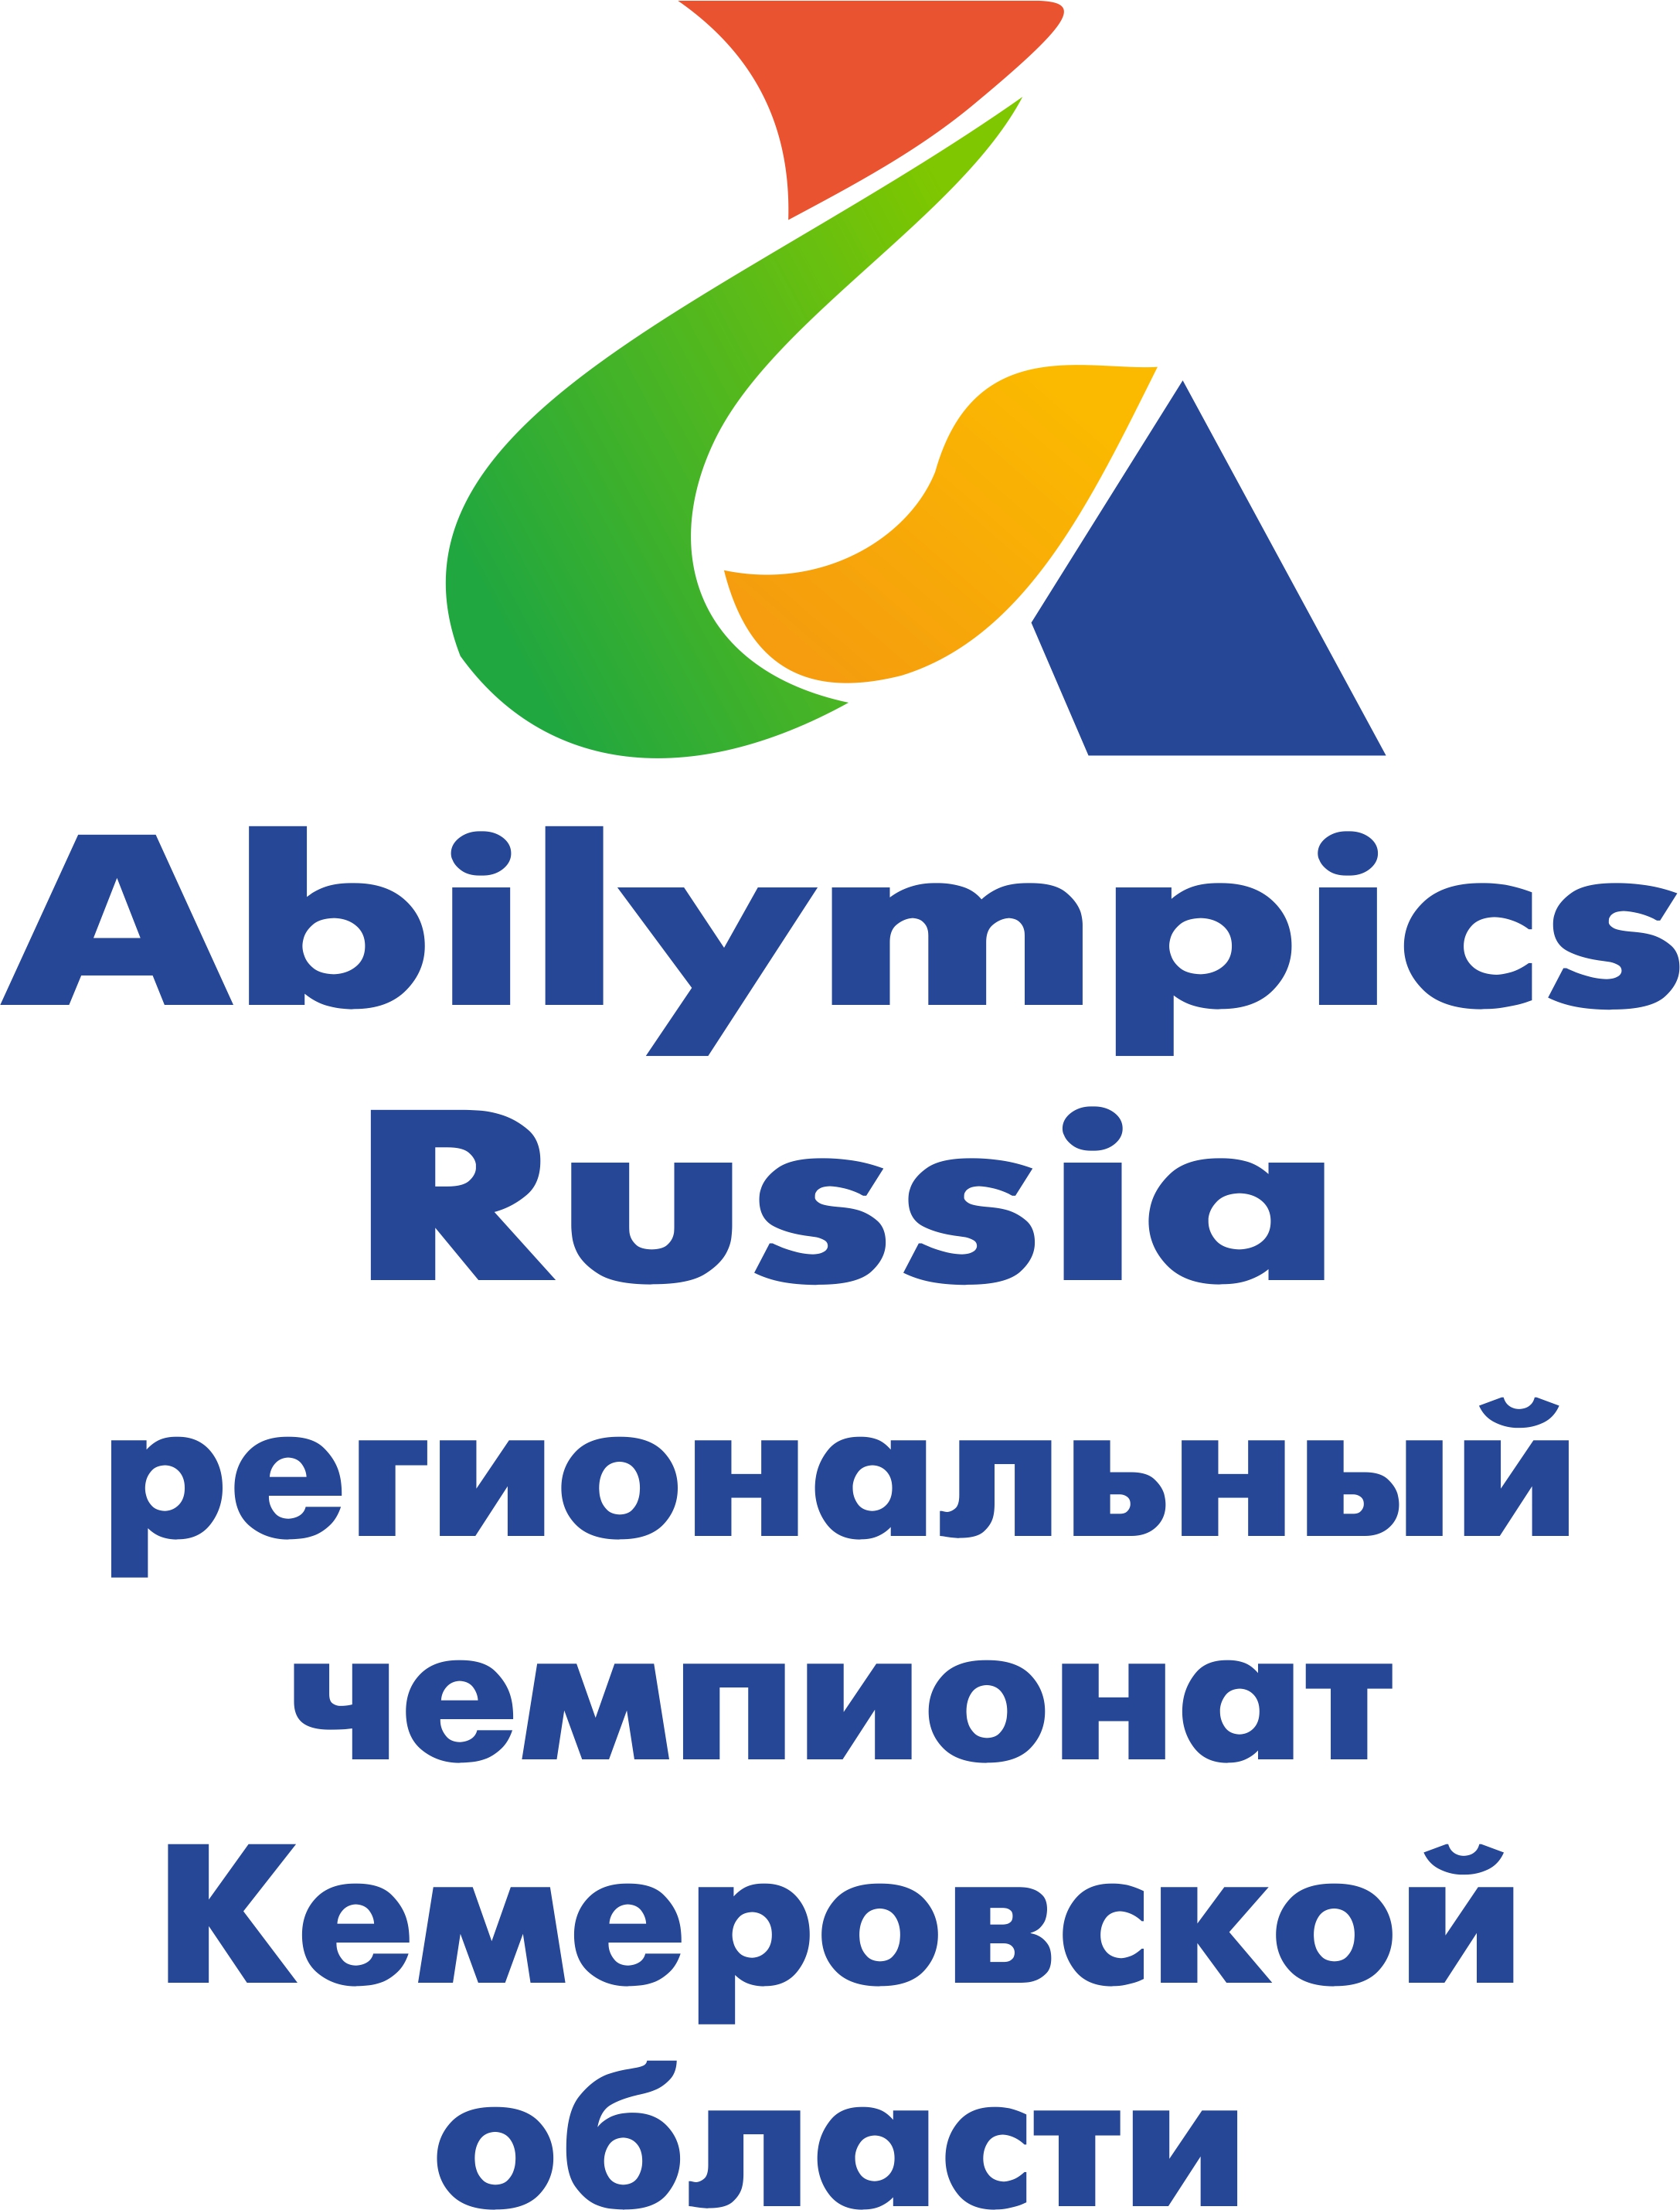 27-28 апреля в Кемеровской области состоится второй Региональный чемпионат по профессиональному мастерству среди людей с инвалидностью «Абилимпикс – 2017» в Кемеровской области